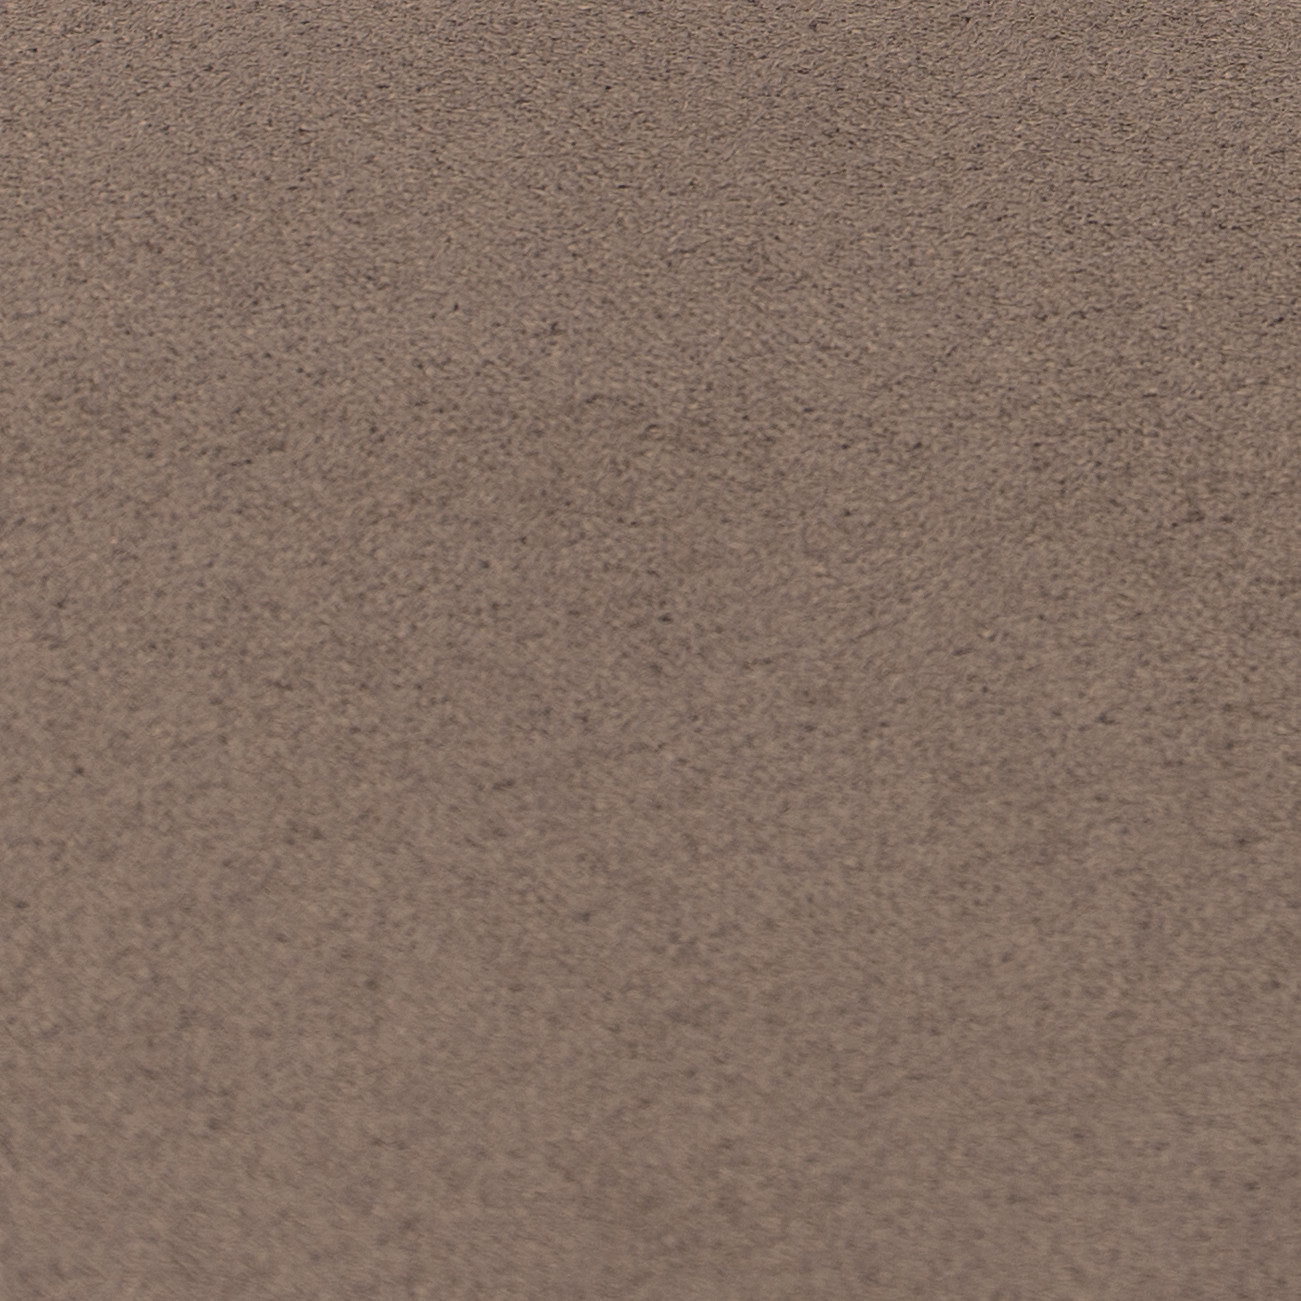 TENO006 Renna con bordino grigio chiaro BDP03 - Tessuto Nordic